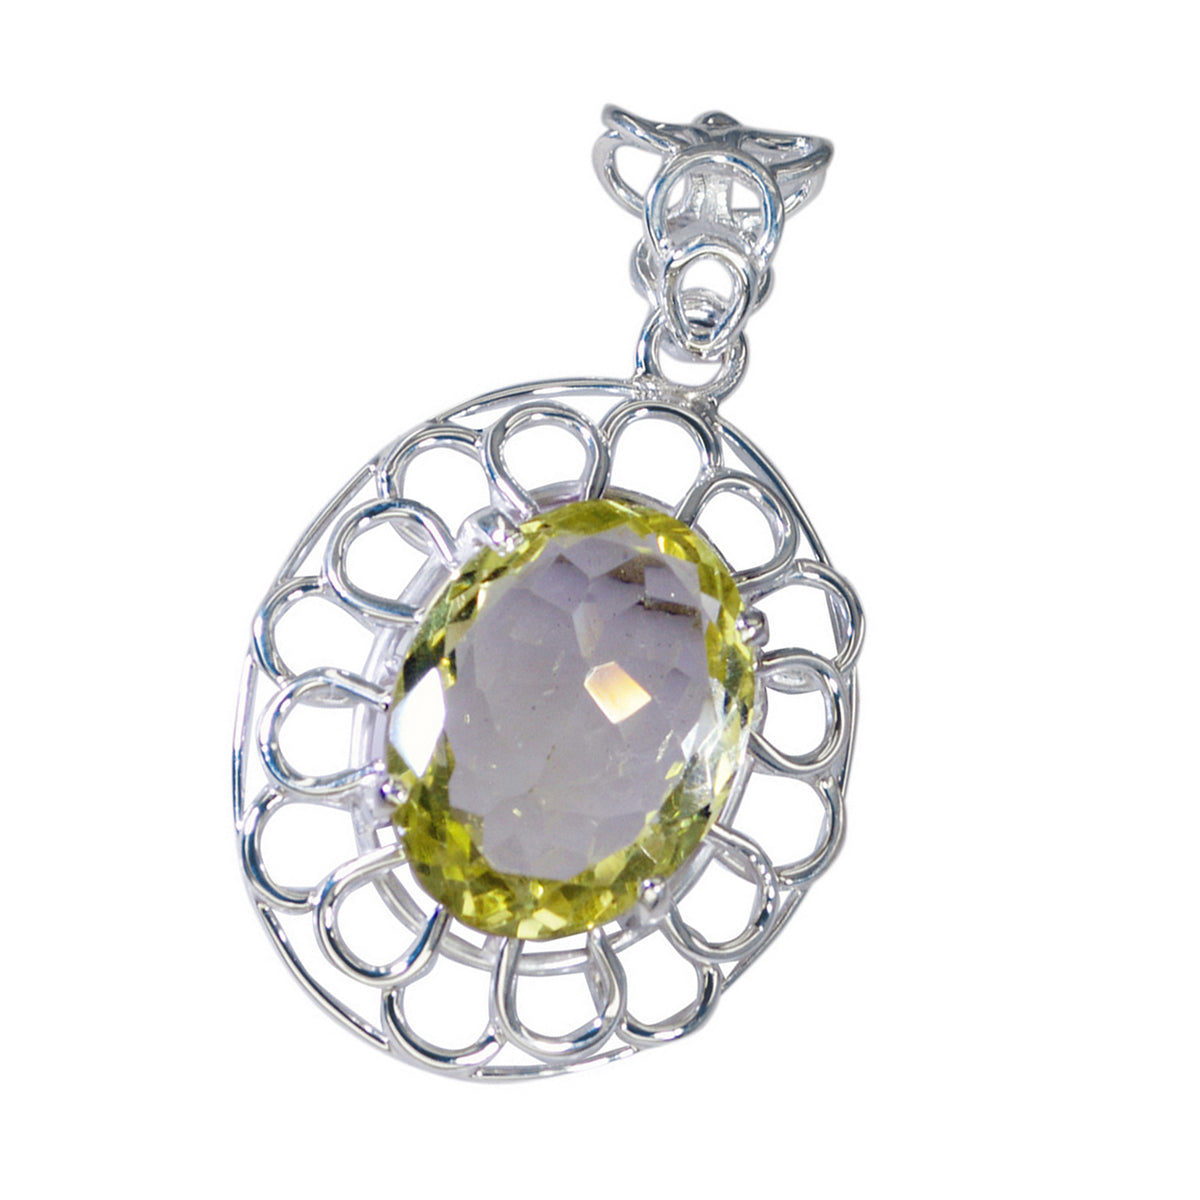 Riyo smashing pierre précieuse ovale damier jaune citron quartz 1193 pendentif en argent sterling cadeau pour anniversaire